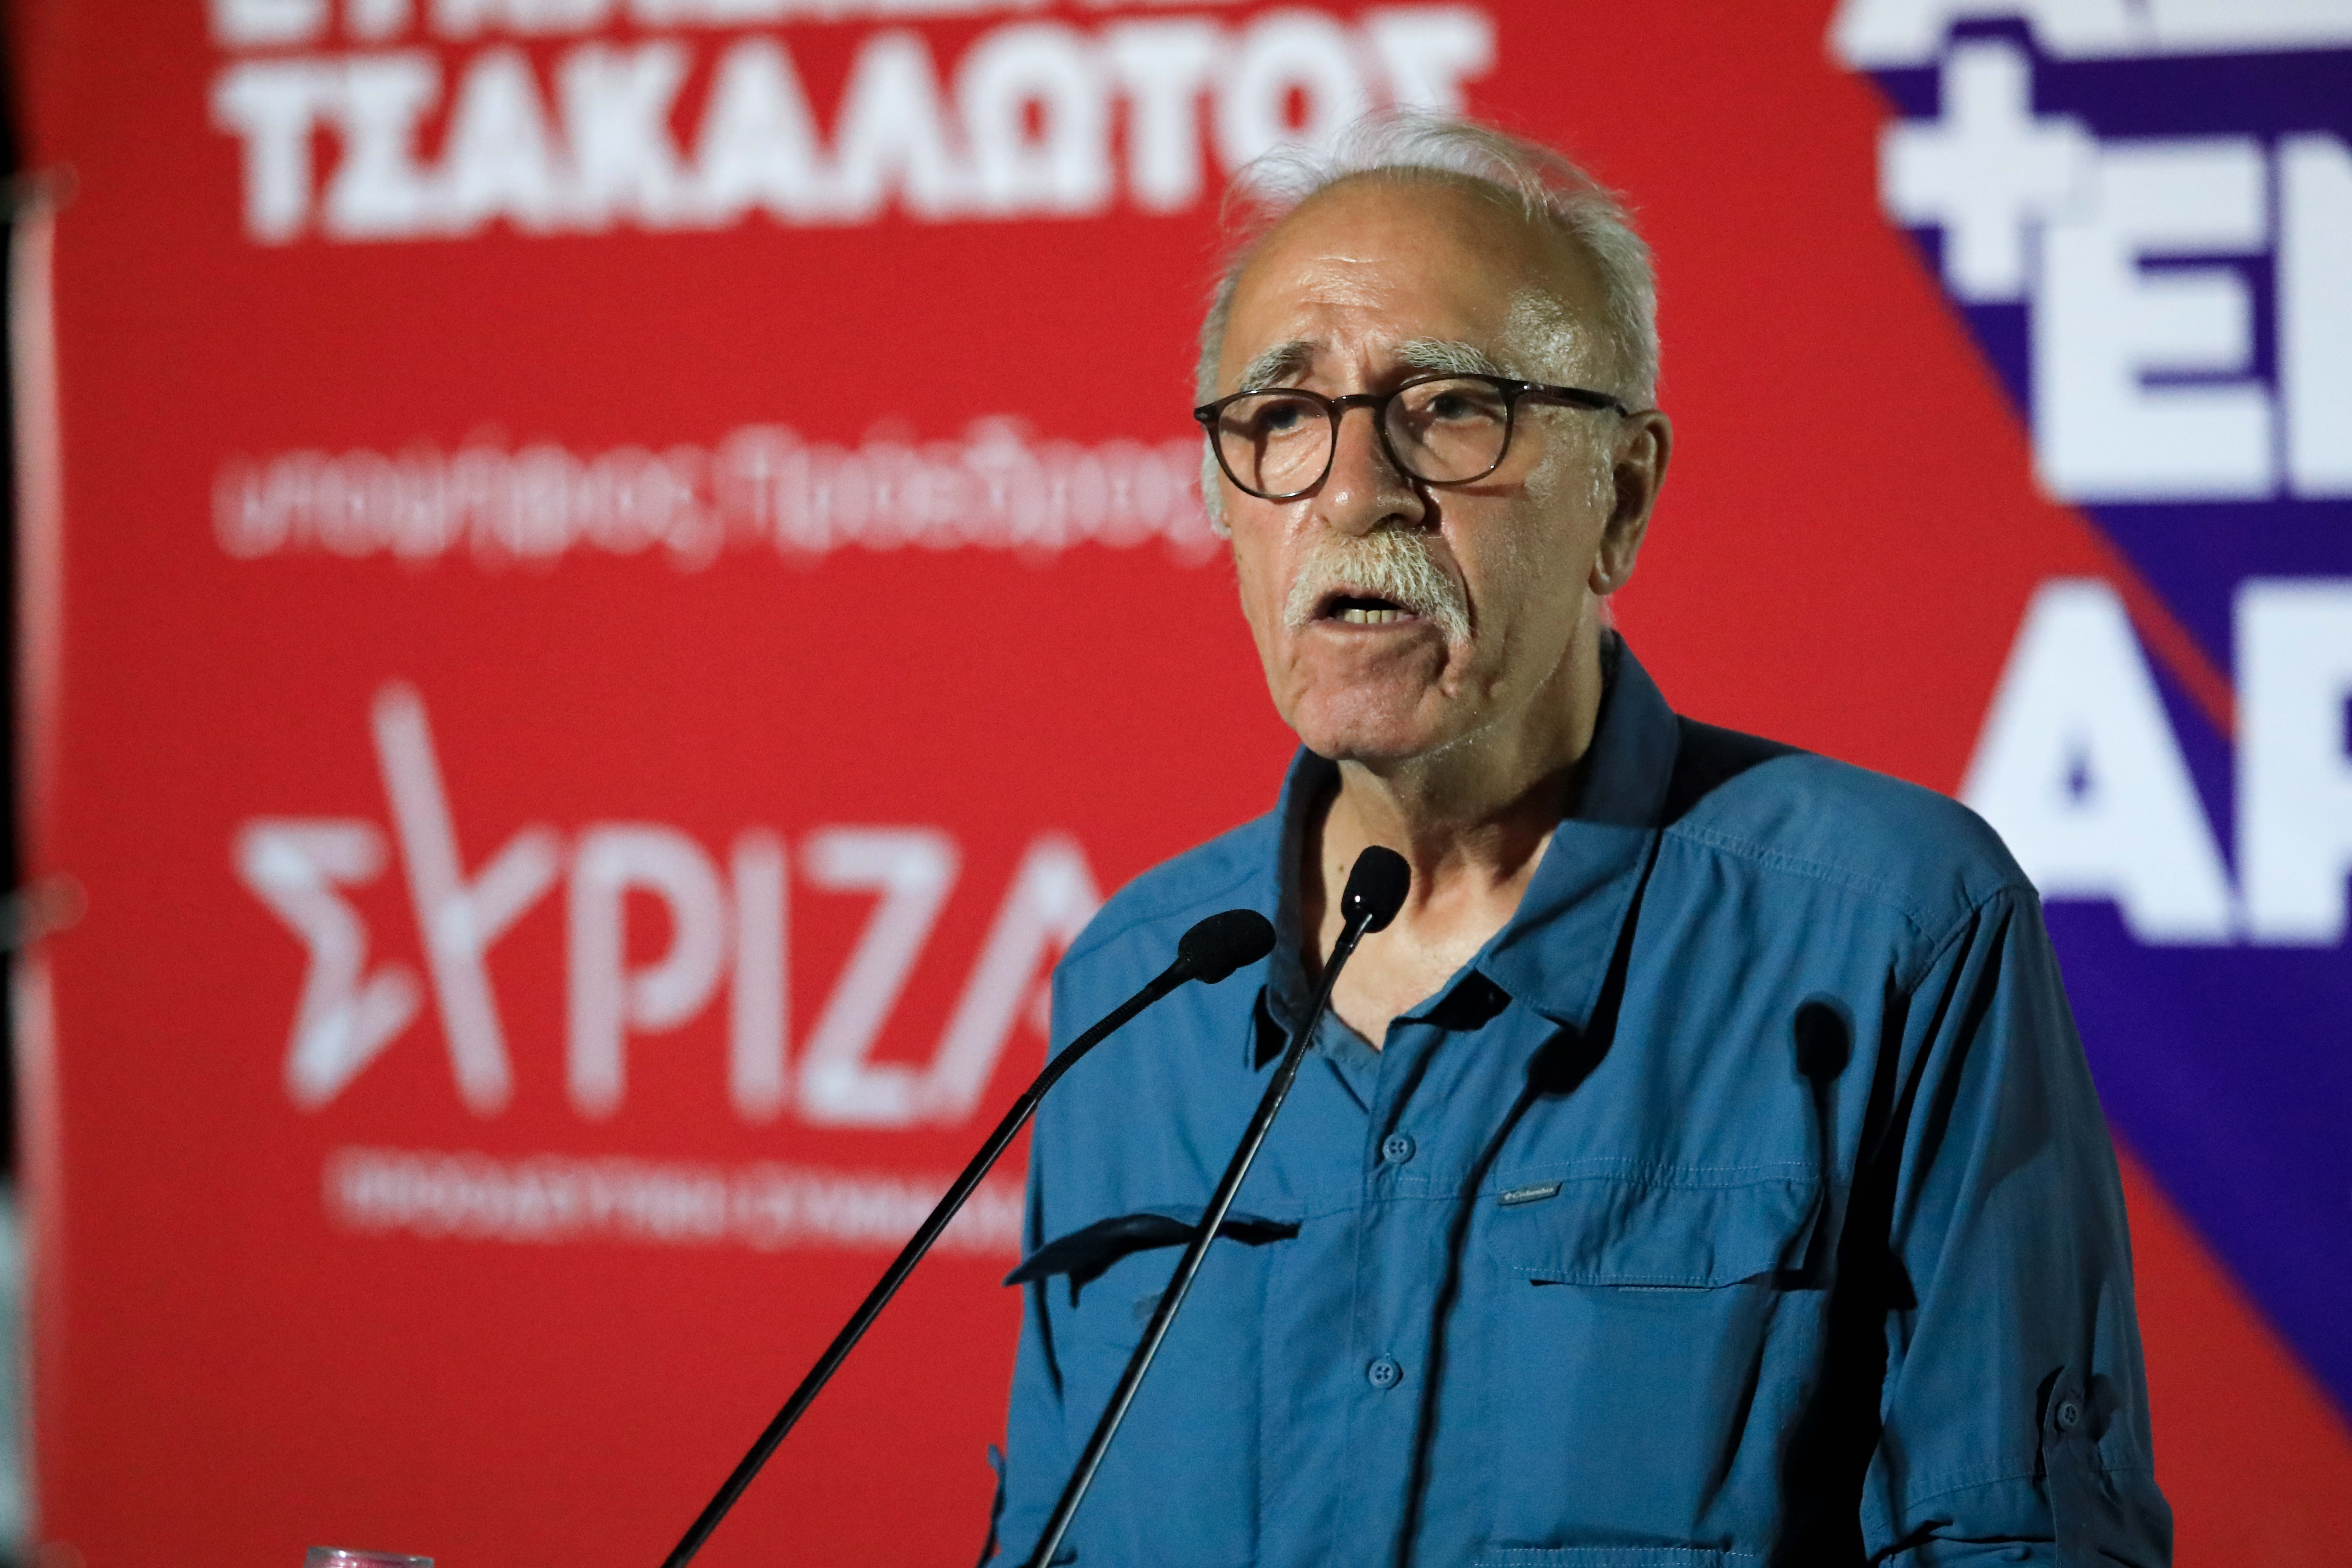 Βίτσας: Δύσκολα θα περάσει η πρόταση Κασσελάκη για Τζουμάκα - Θα φύγουν πολλοί από τον ΣΥΡΙΖΑ